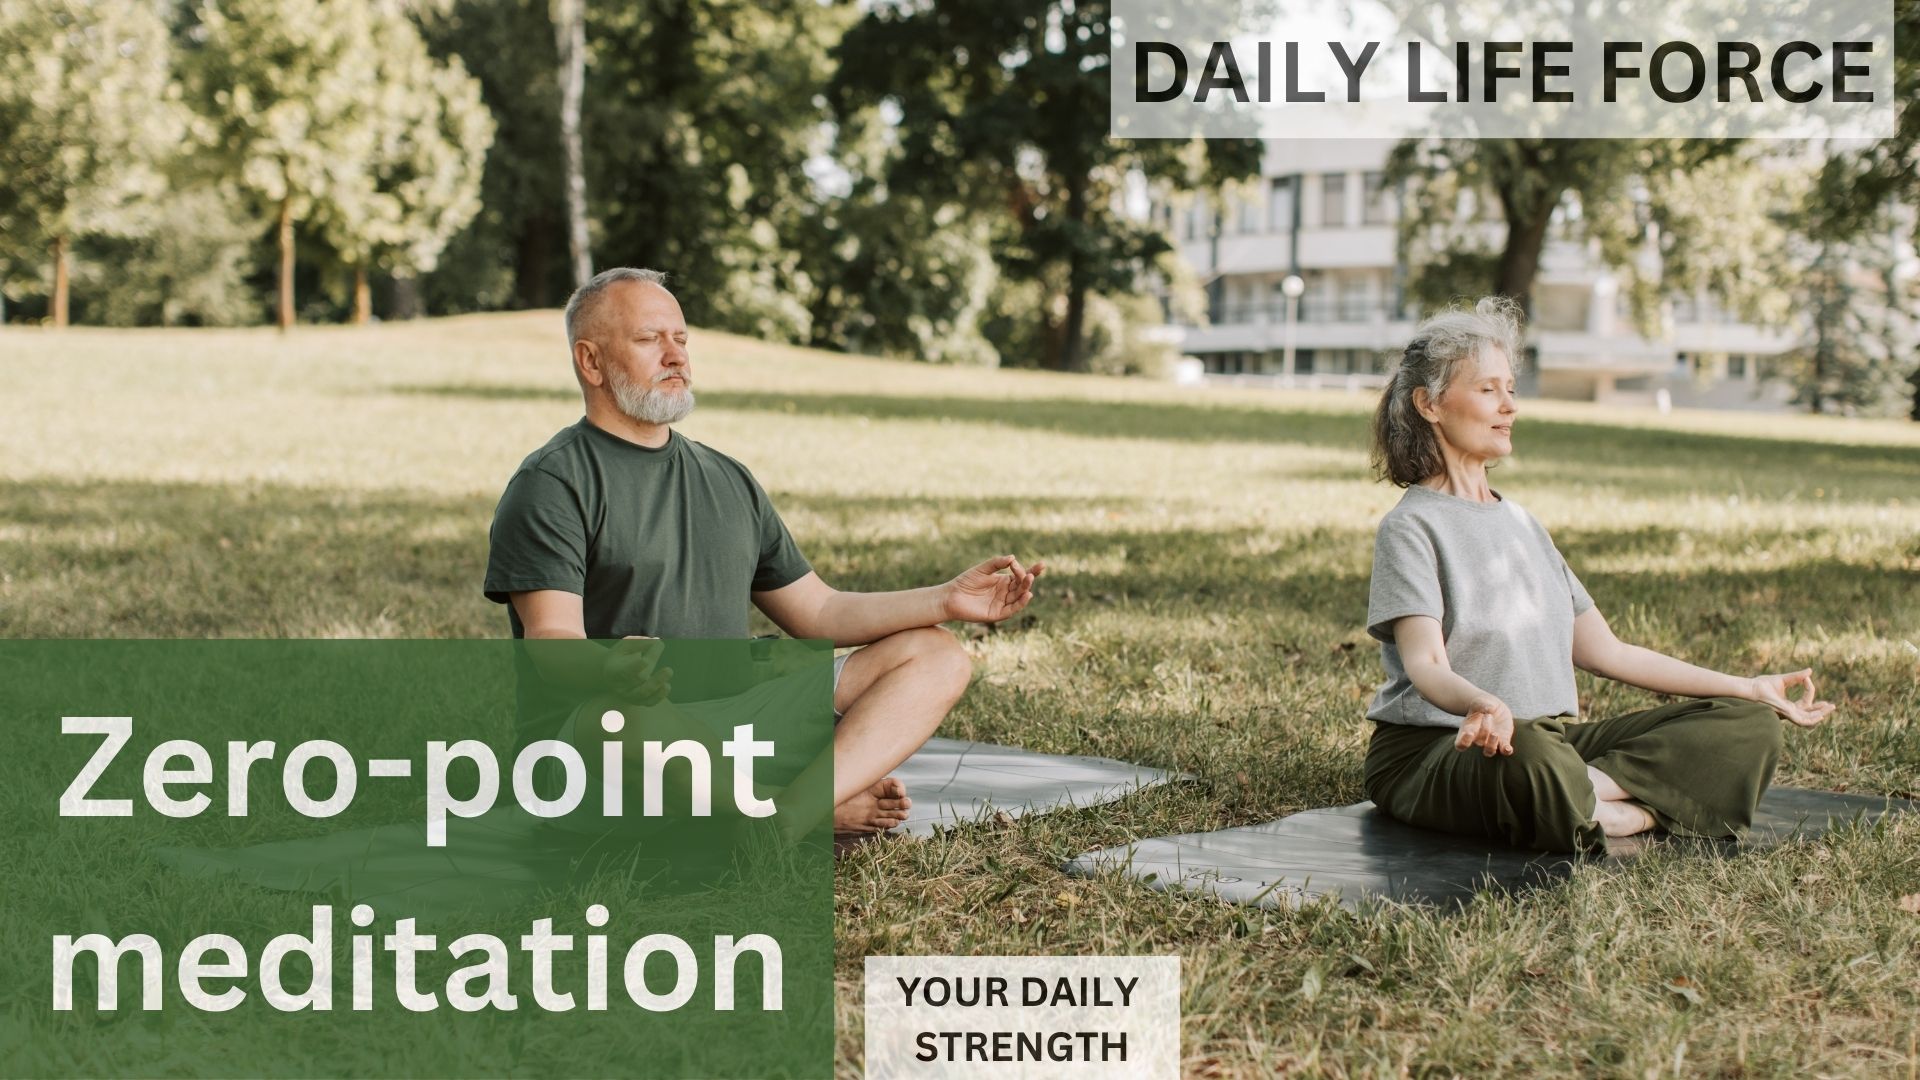 Zero-point meditation